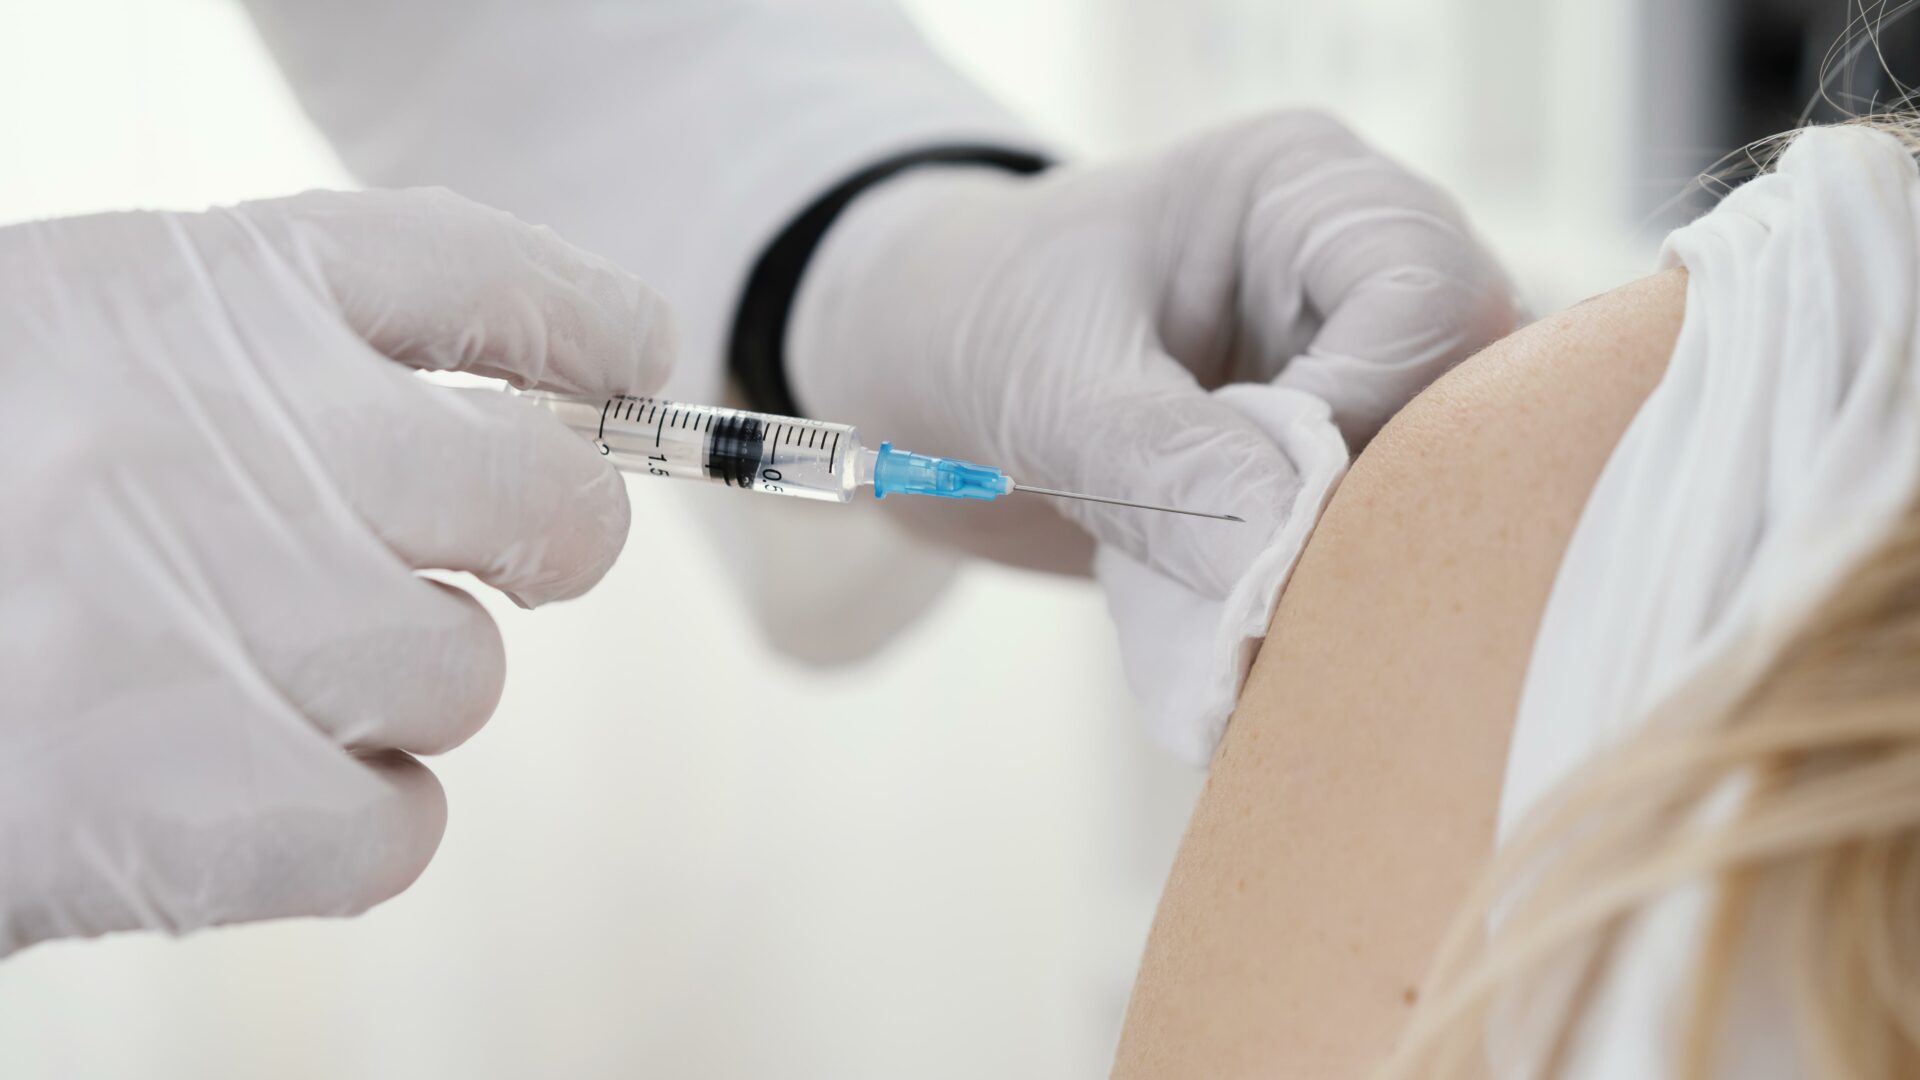 Slovensko spúšťa očkovanie novou vakcínou proti COVID-19. Dostanete ju aj v Košiciach